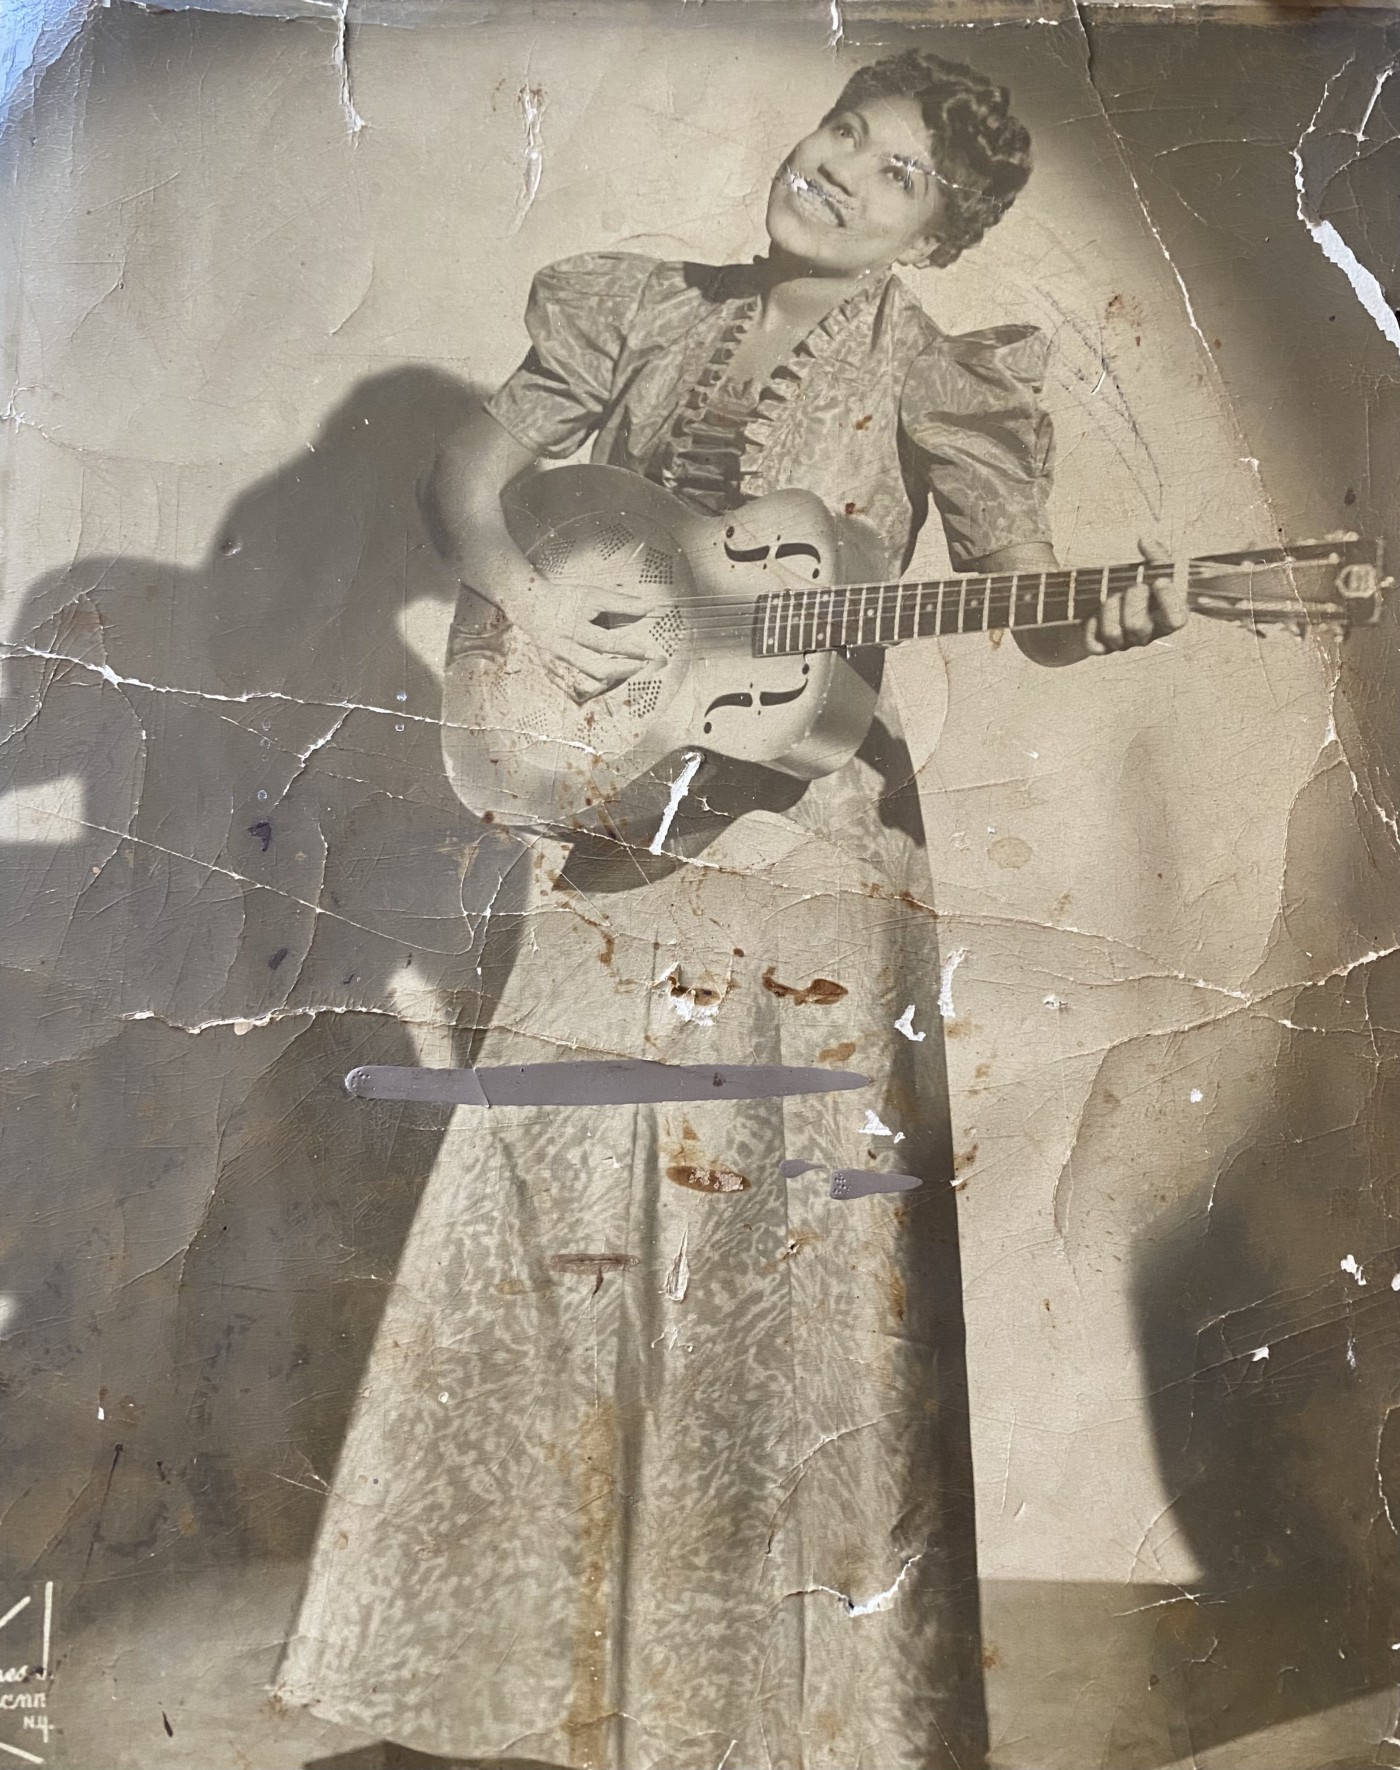 Caption: Sister Rosetta Tharpe Strumming Her Guitar on Vintage Photo Wallpaper